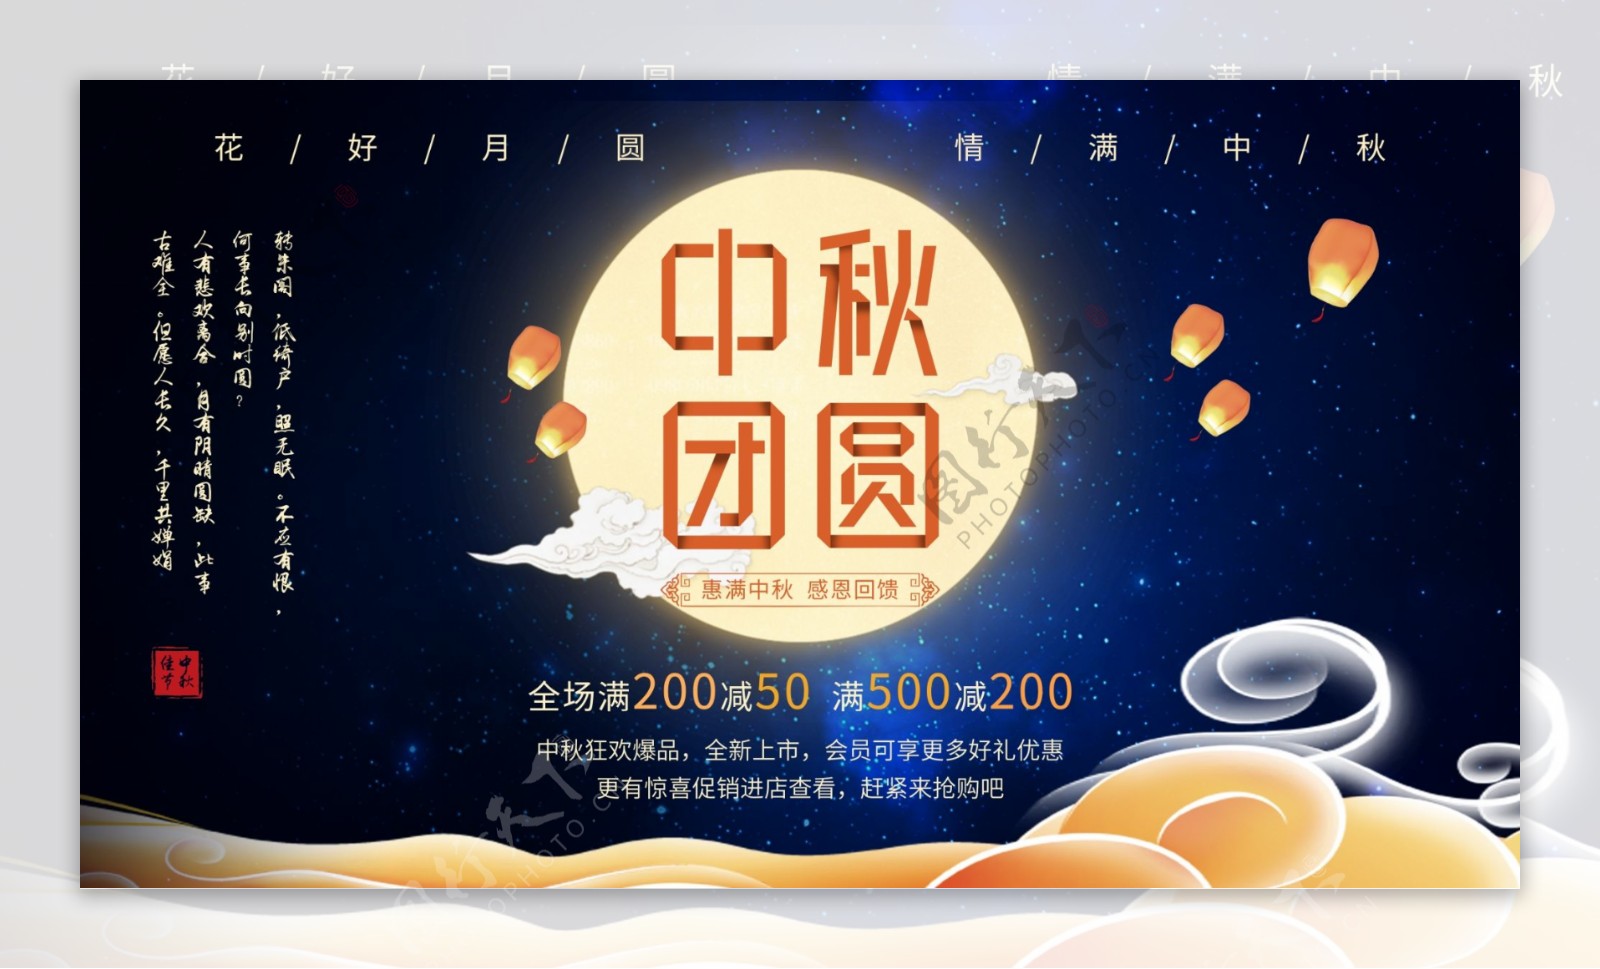 八月十五中秋佳节花好月圆节日促销宣传海报